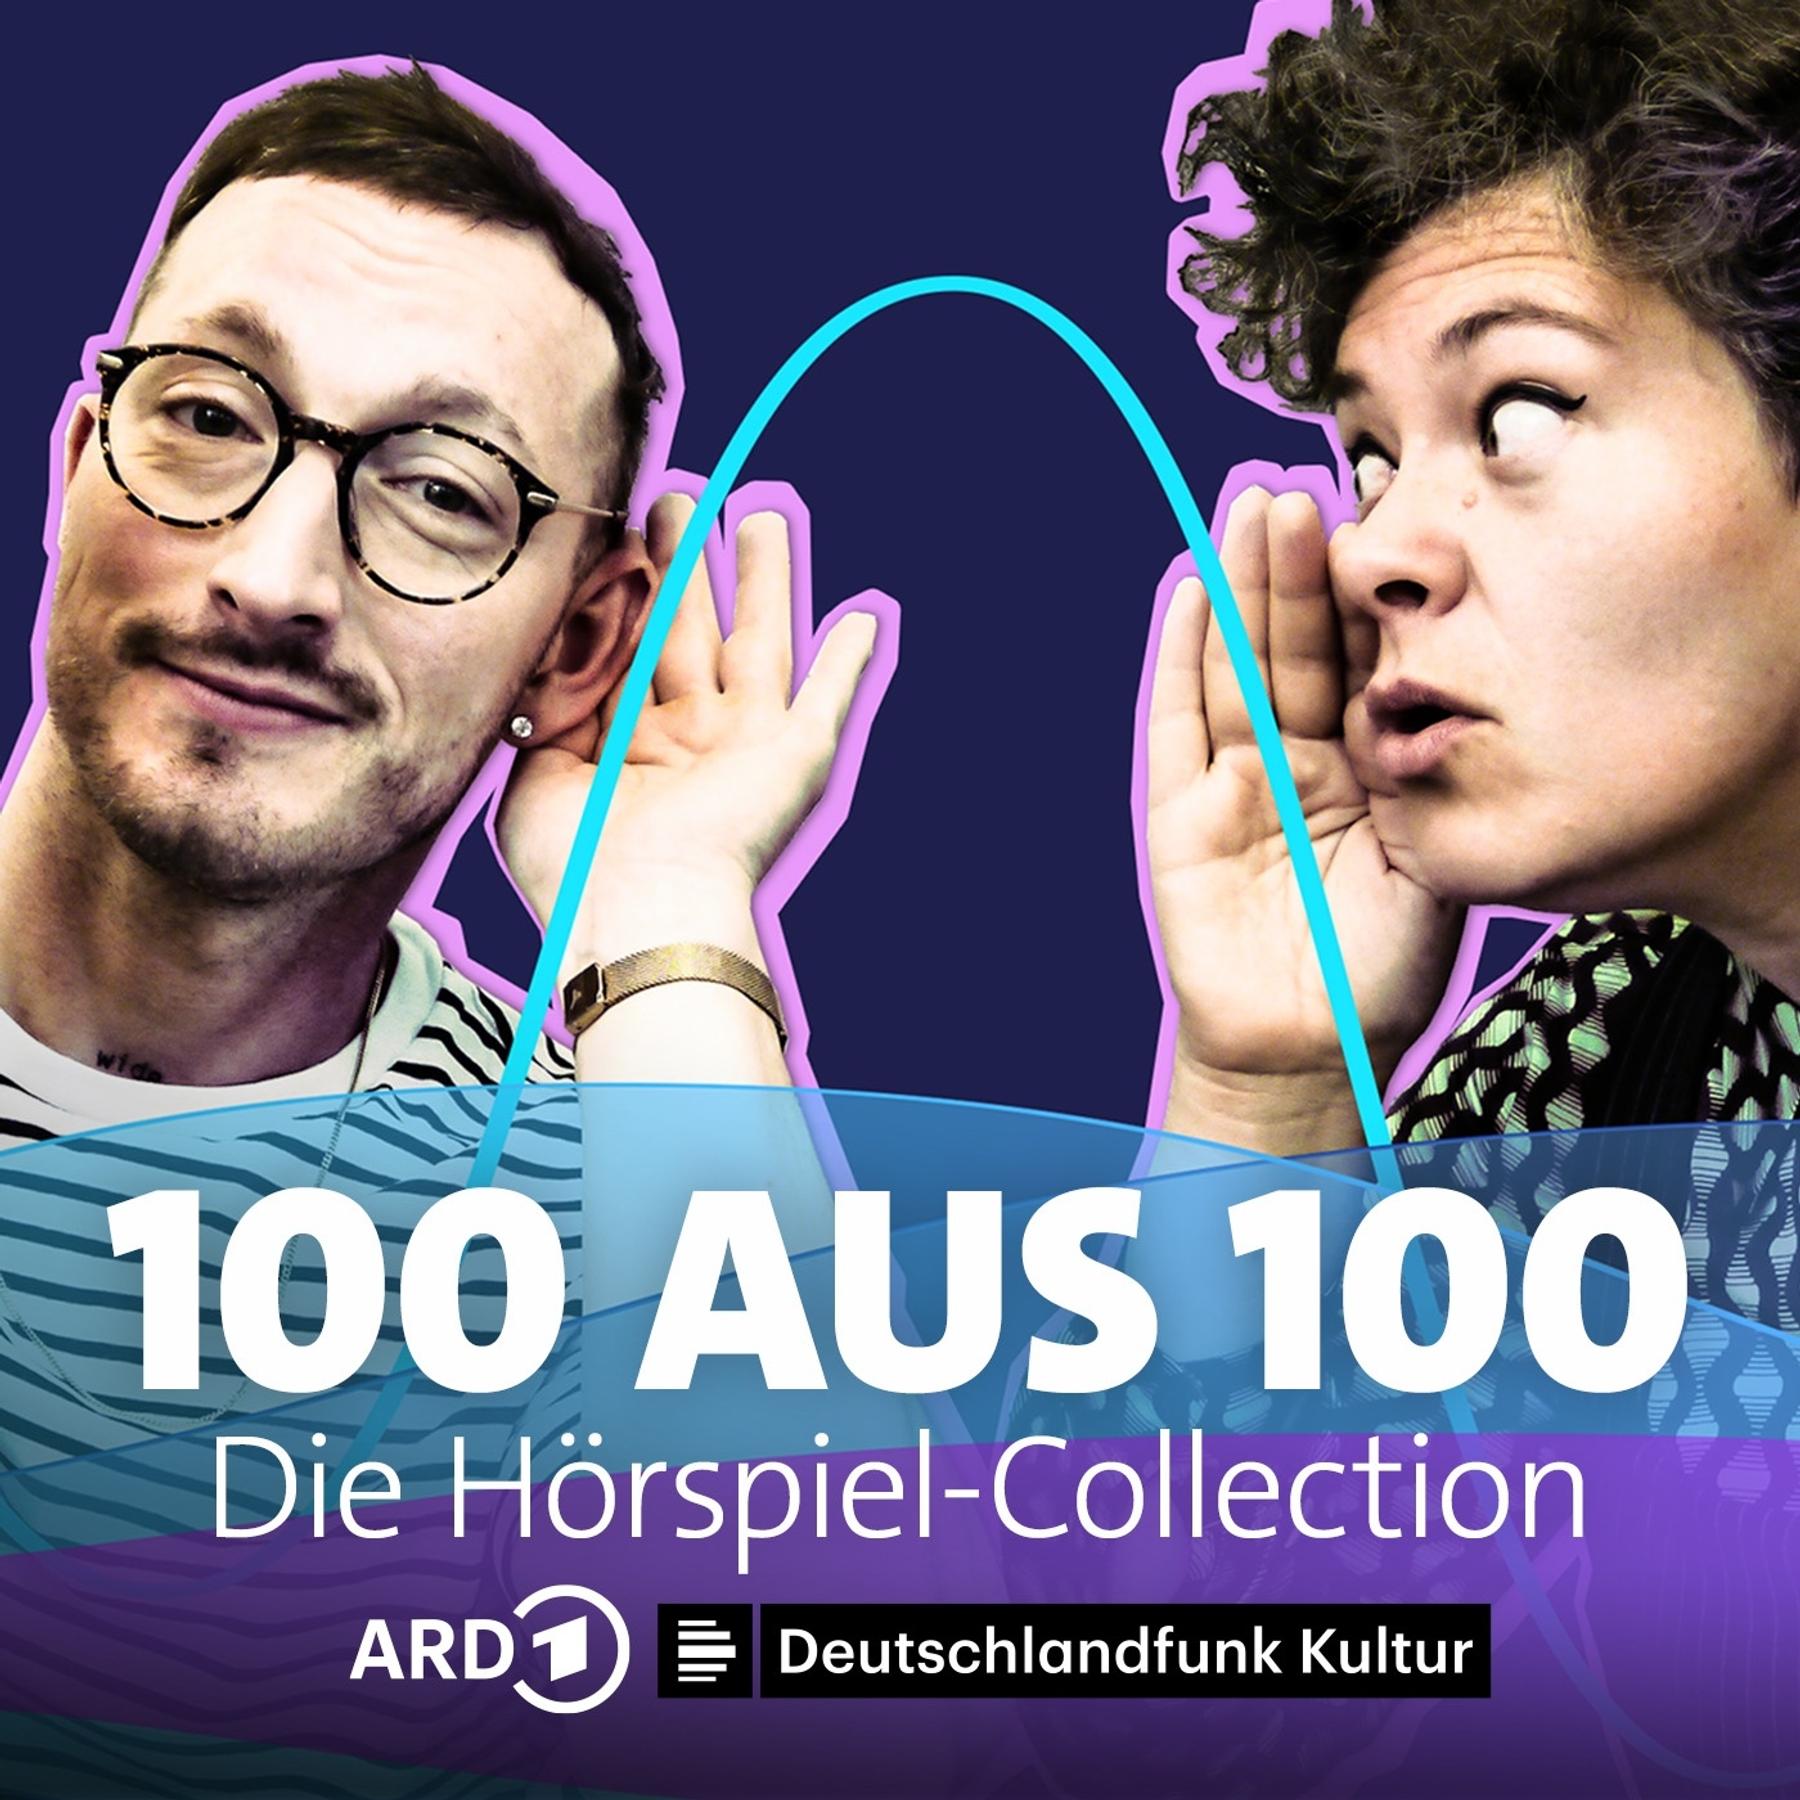 Trailer: 100 aus 100: Die Hörspiel-Collection